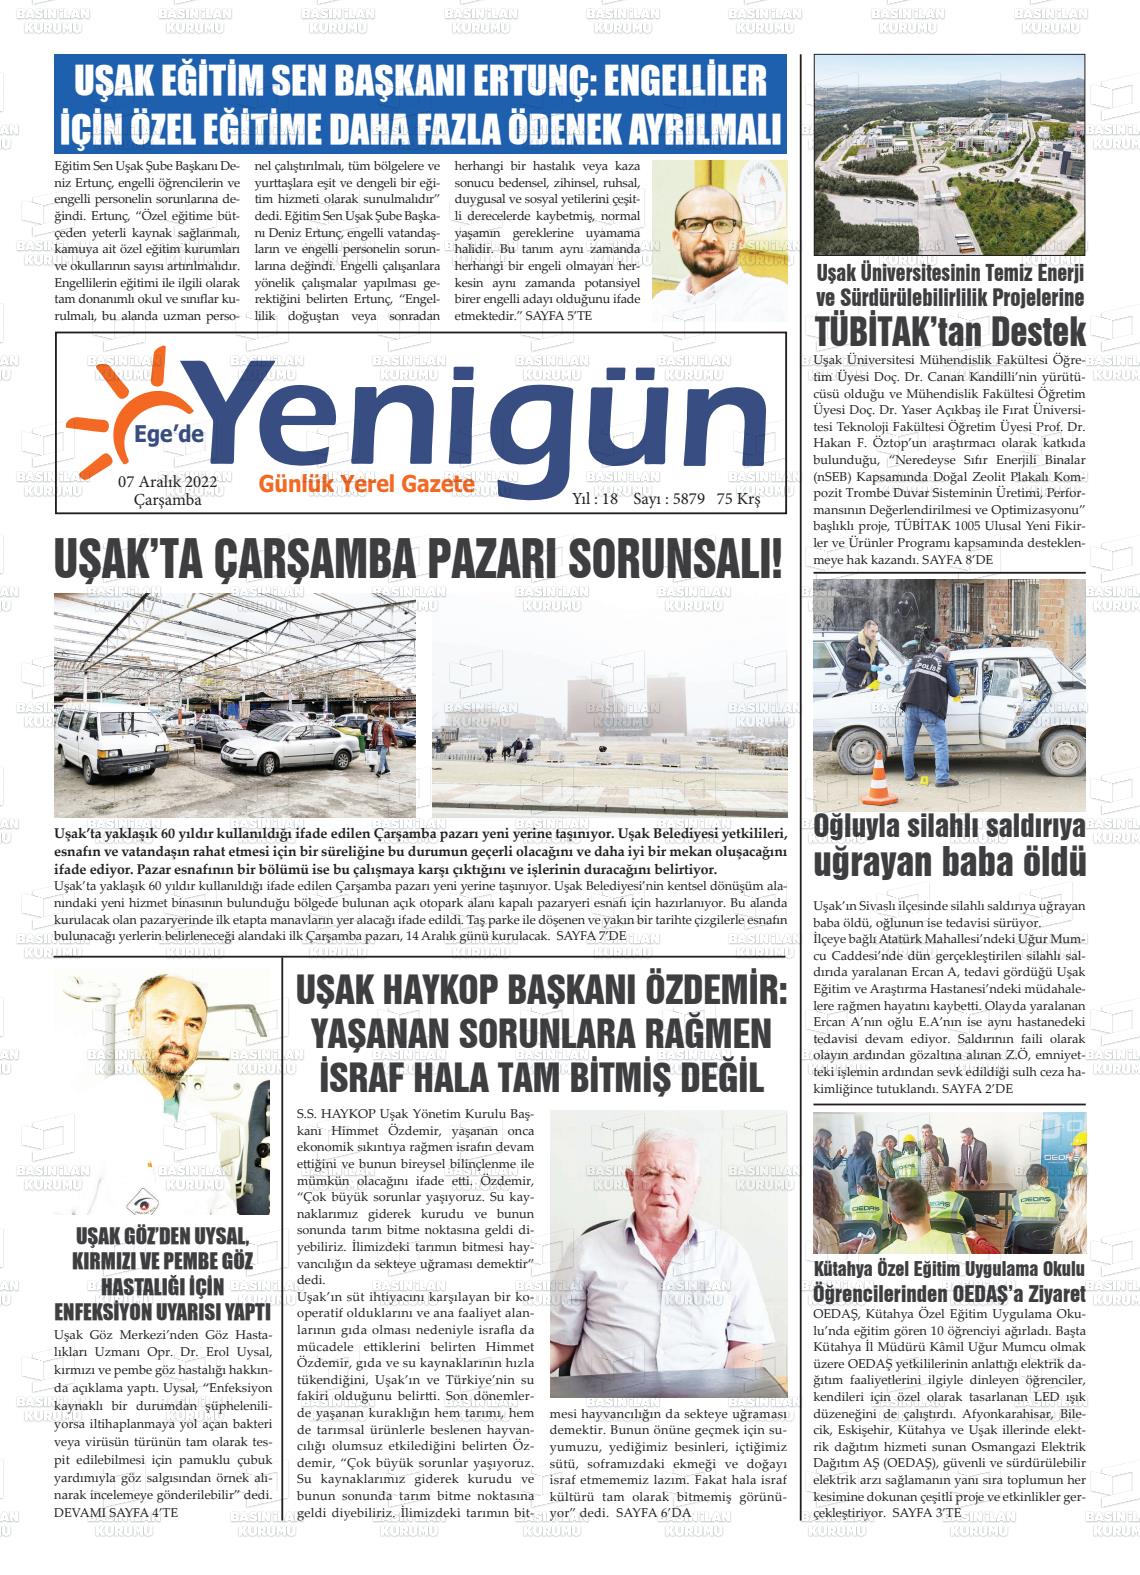 07 Aralık 2022 EGE'DE YENİGÜN GAZETESİ Gazete Manşeti